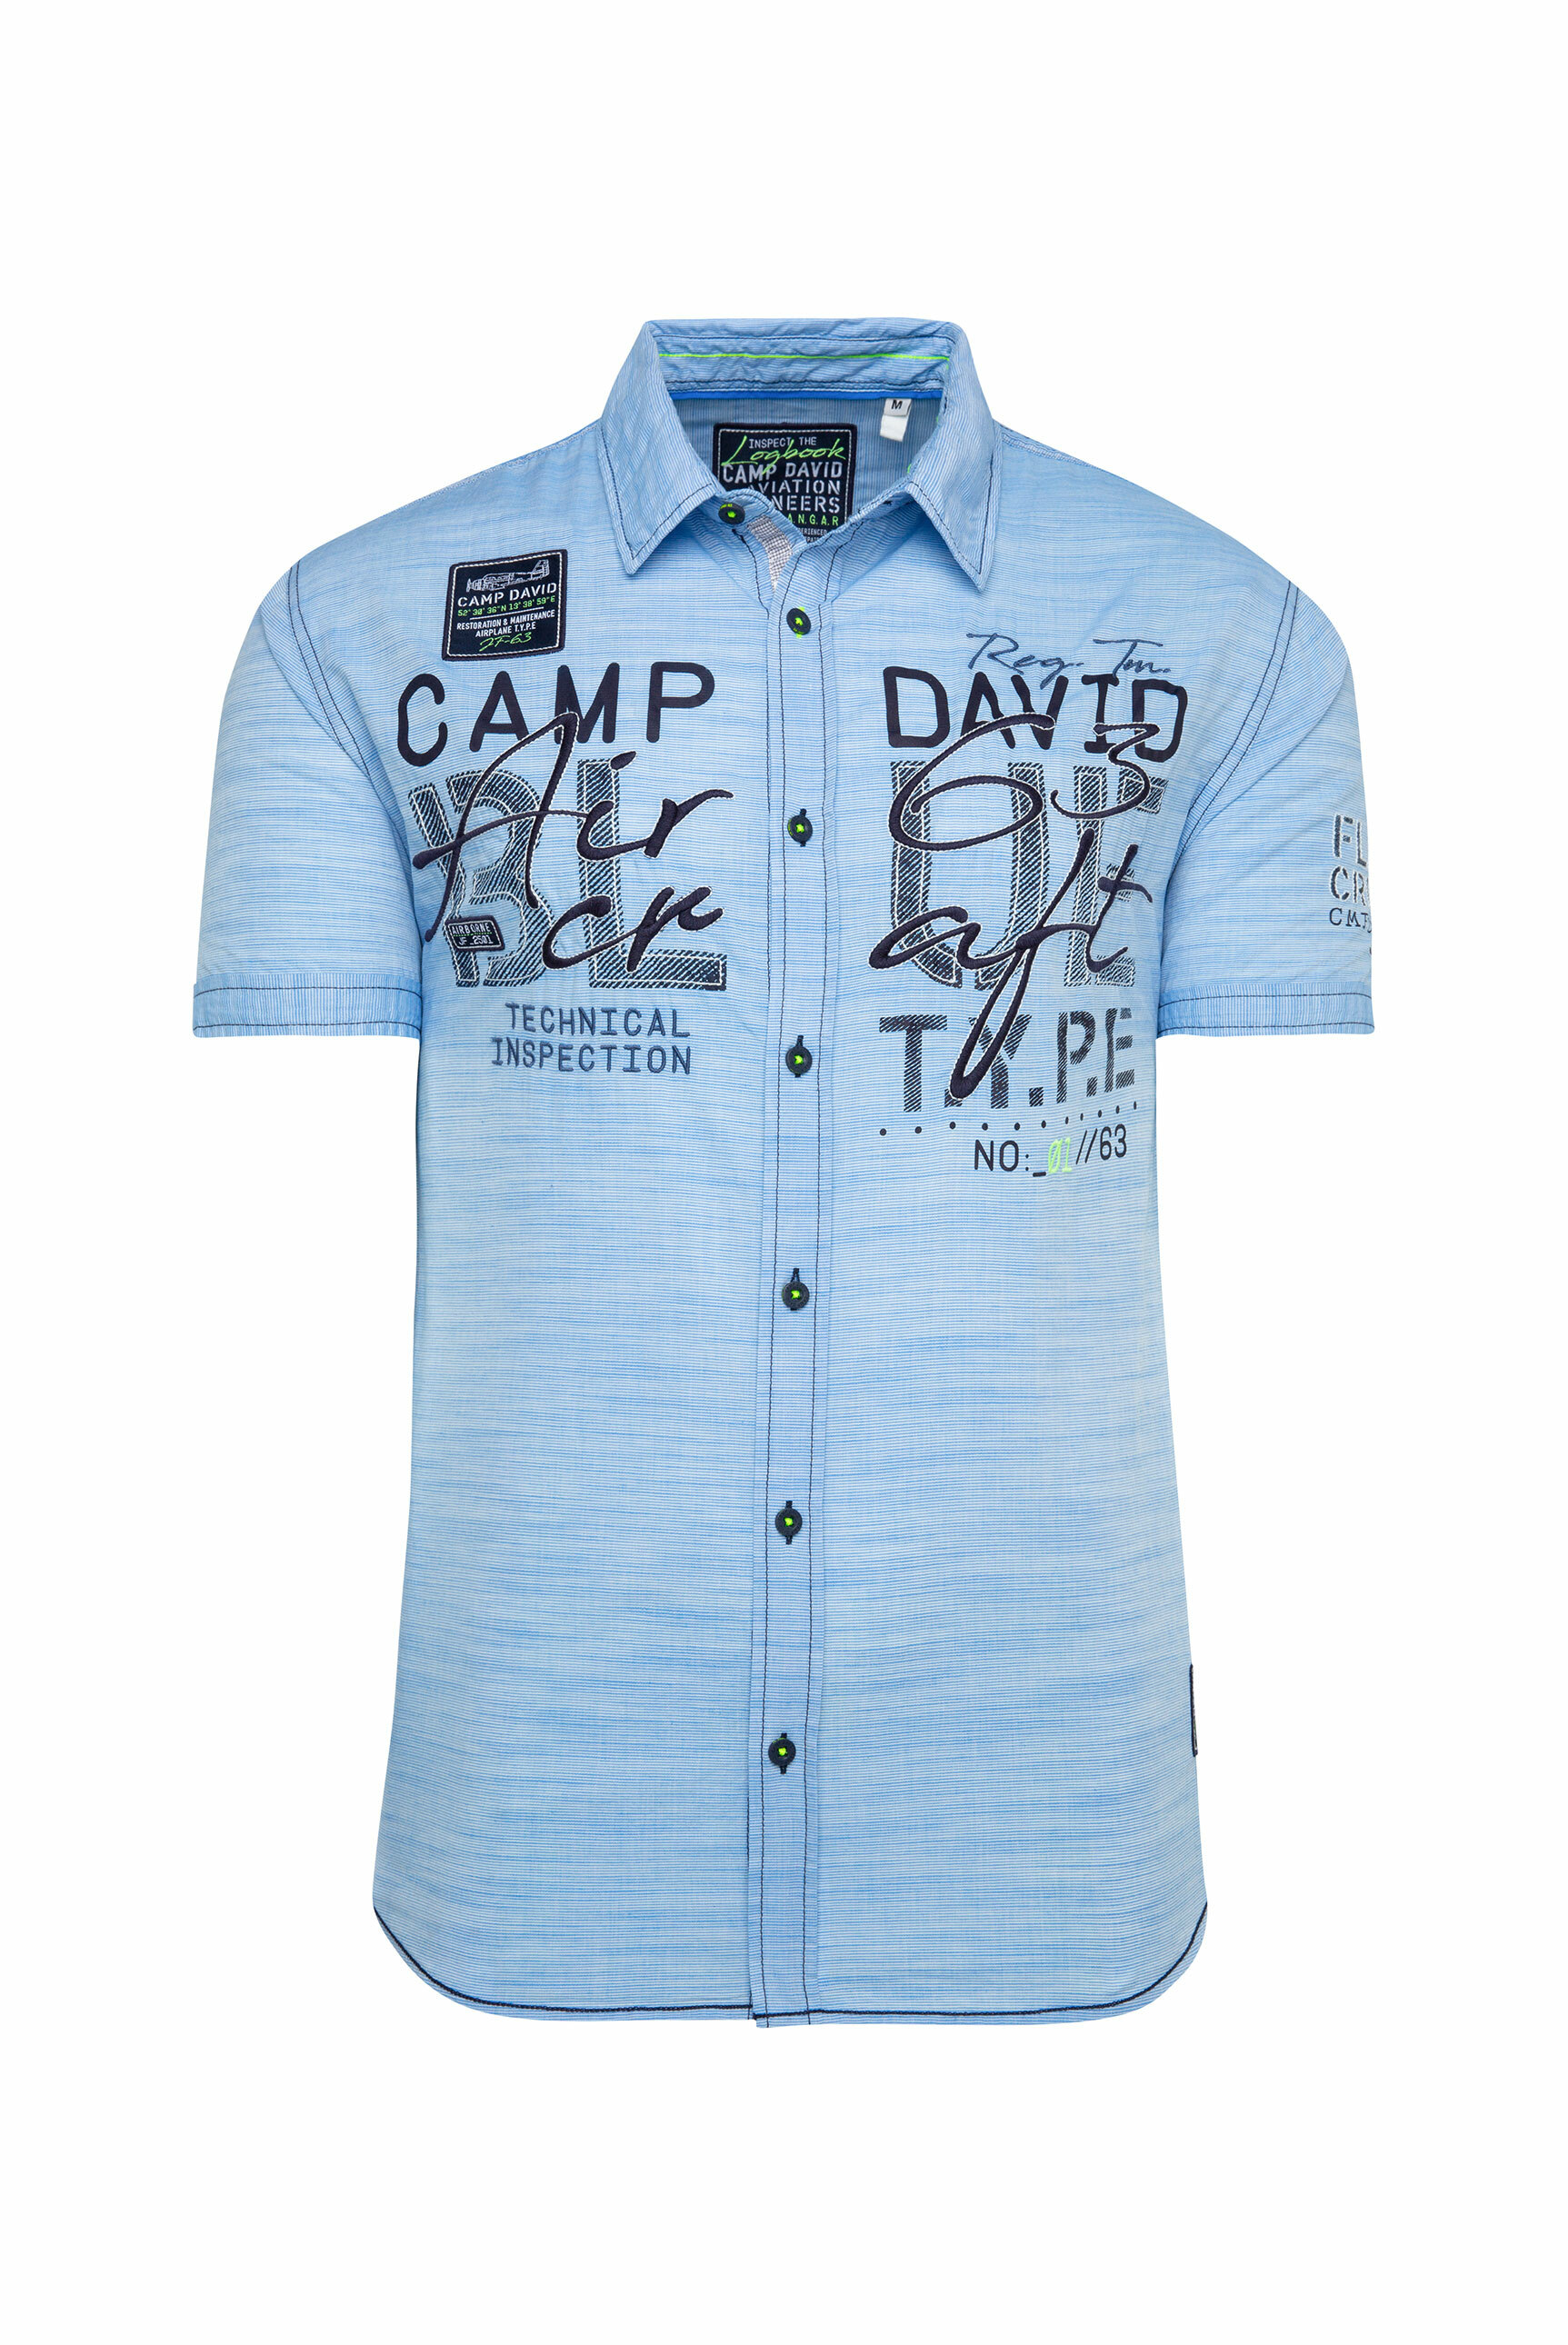 Plus size dF57R CAMP DAVID Hemd w kolorze Jasnoniebieski, Niebieska Nocm 